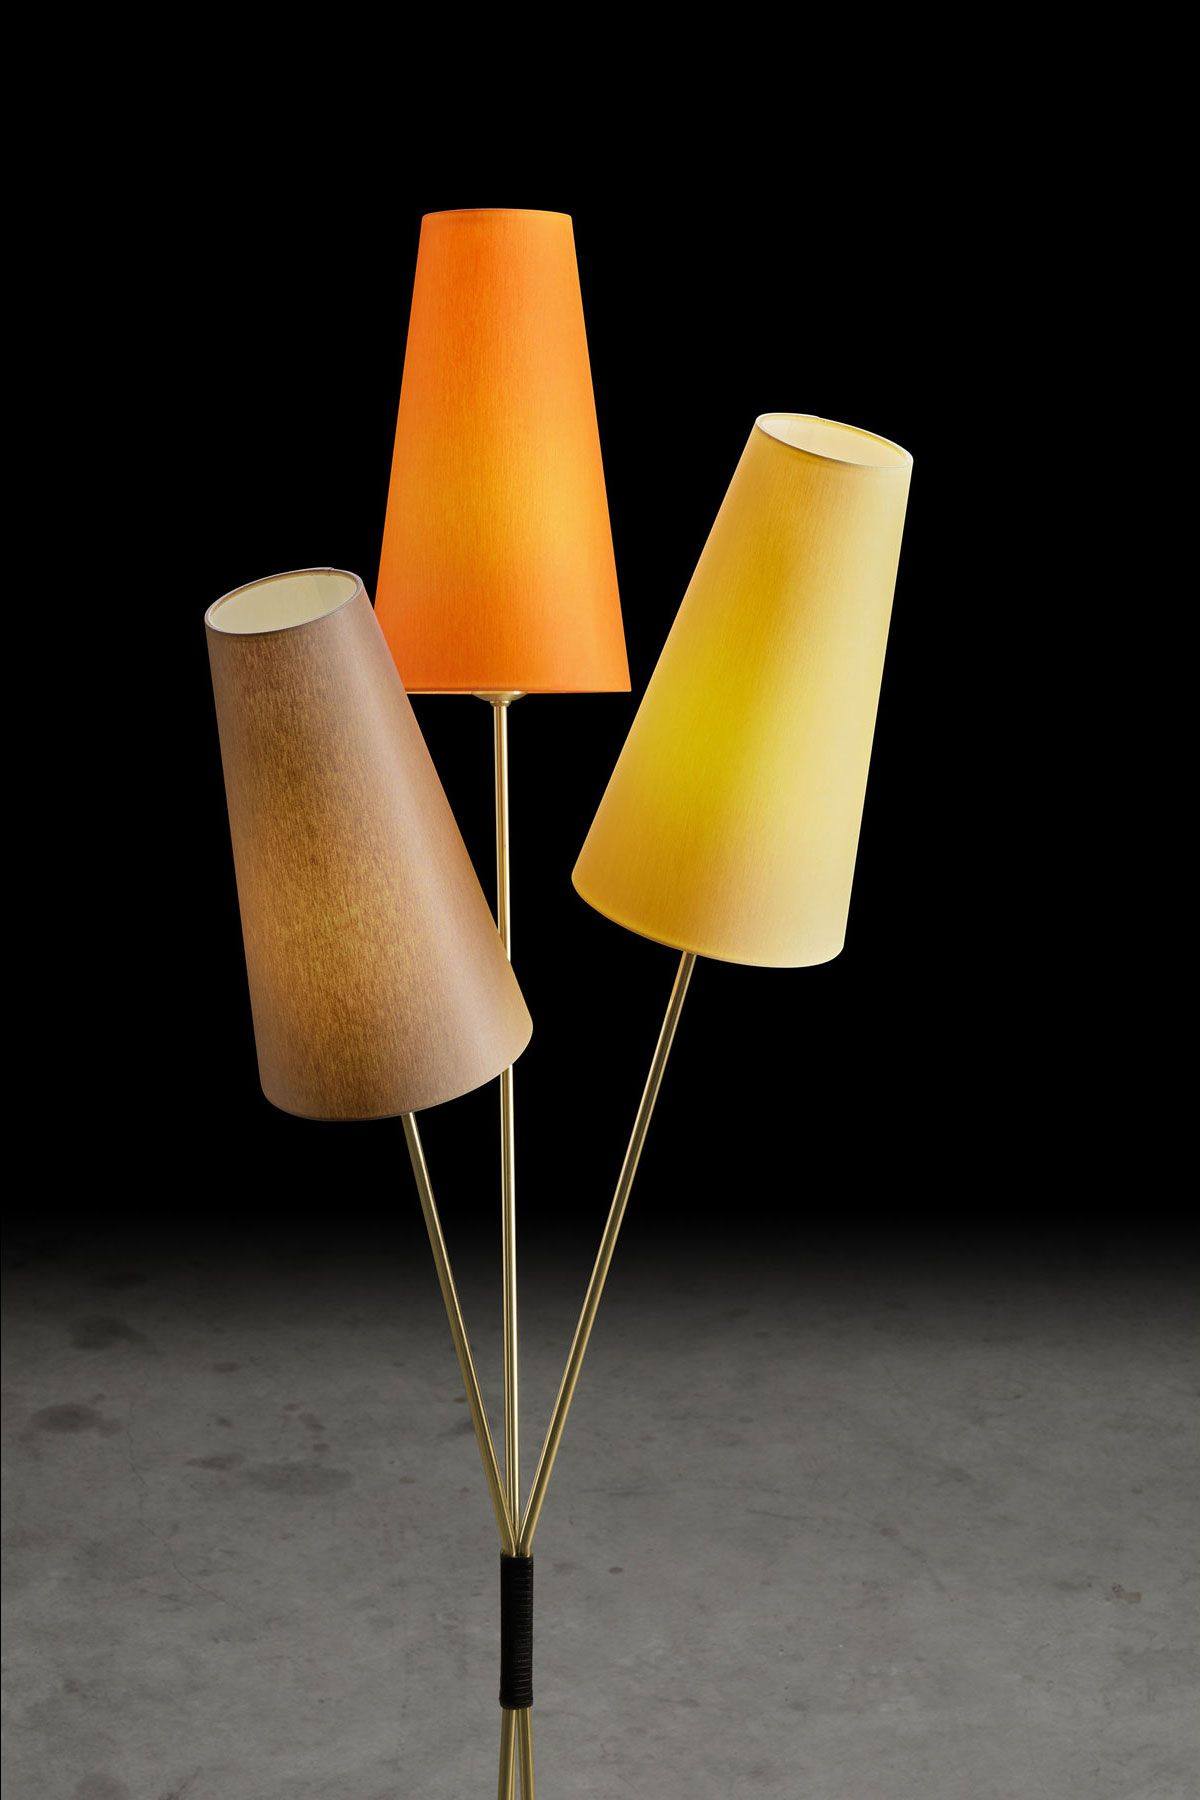 FIFTIES – Stehlampe im 50er Jahre-Look mit drei Schirmen im Bündel, viele Farben: Gestell in Messing matt, Schirme in Orange, Gelb, Taupe